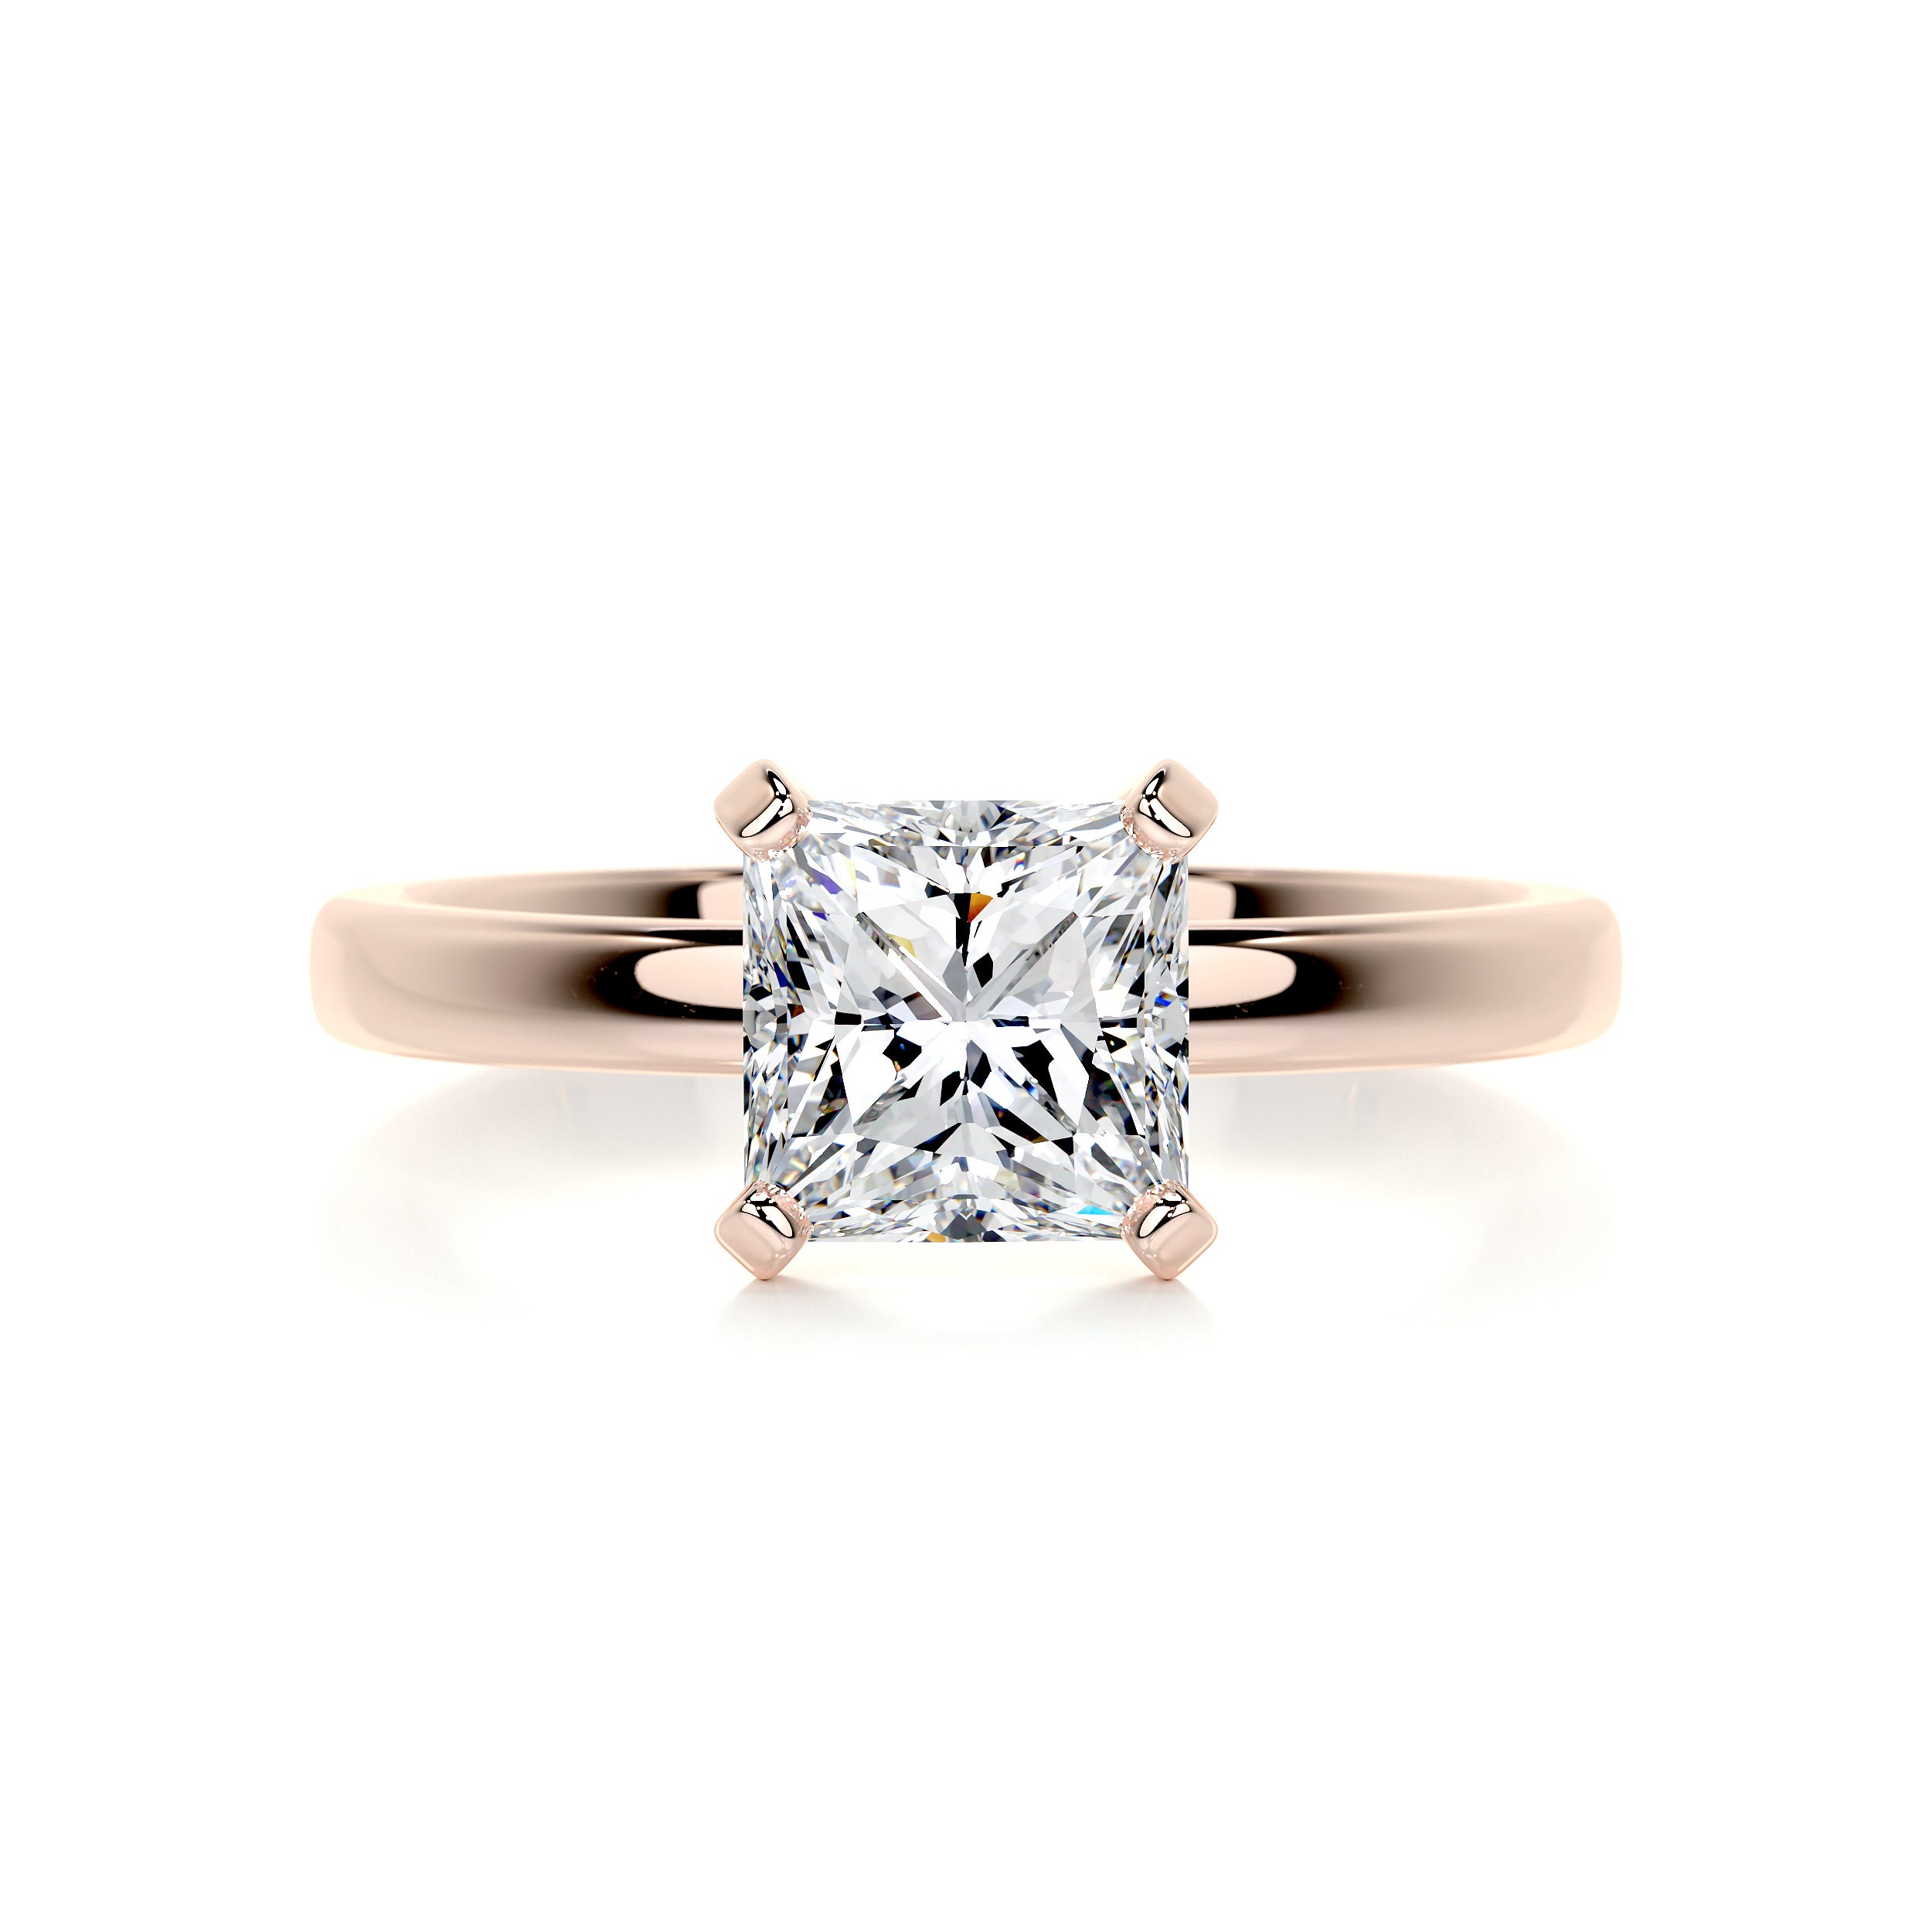 Isabelle Diamond Engagement Ring   (1.5 Carat) -14K Rose Gold